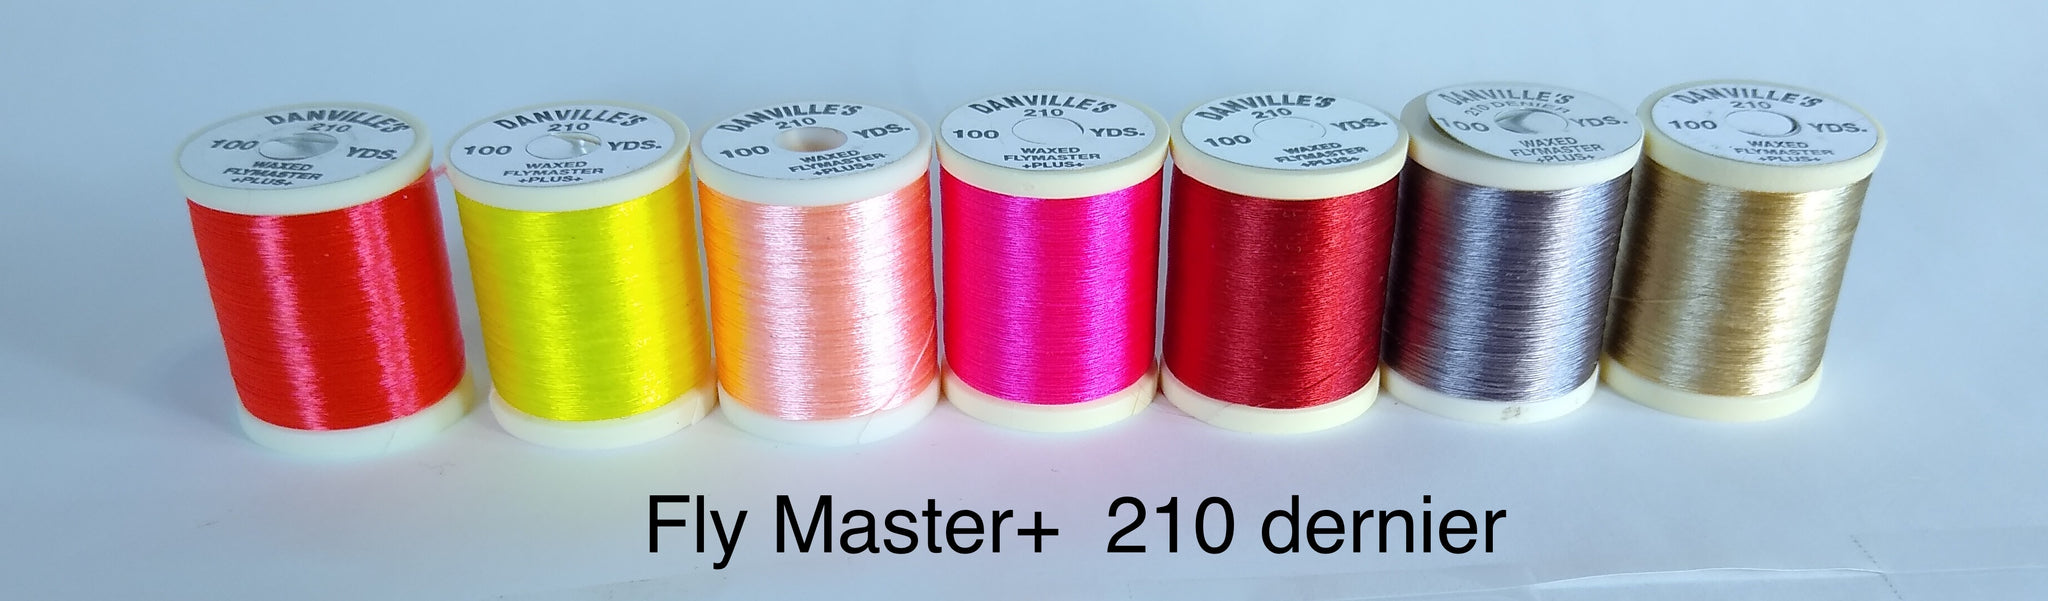 Danville FlyMaster+ Colors,  210 Denier